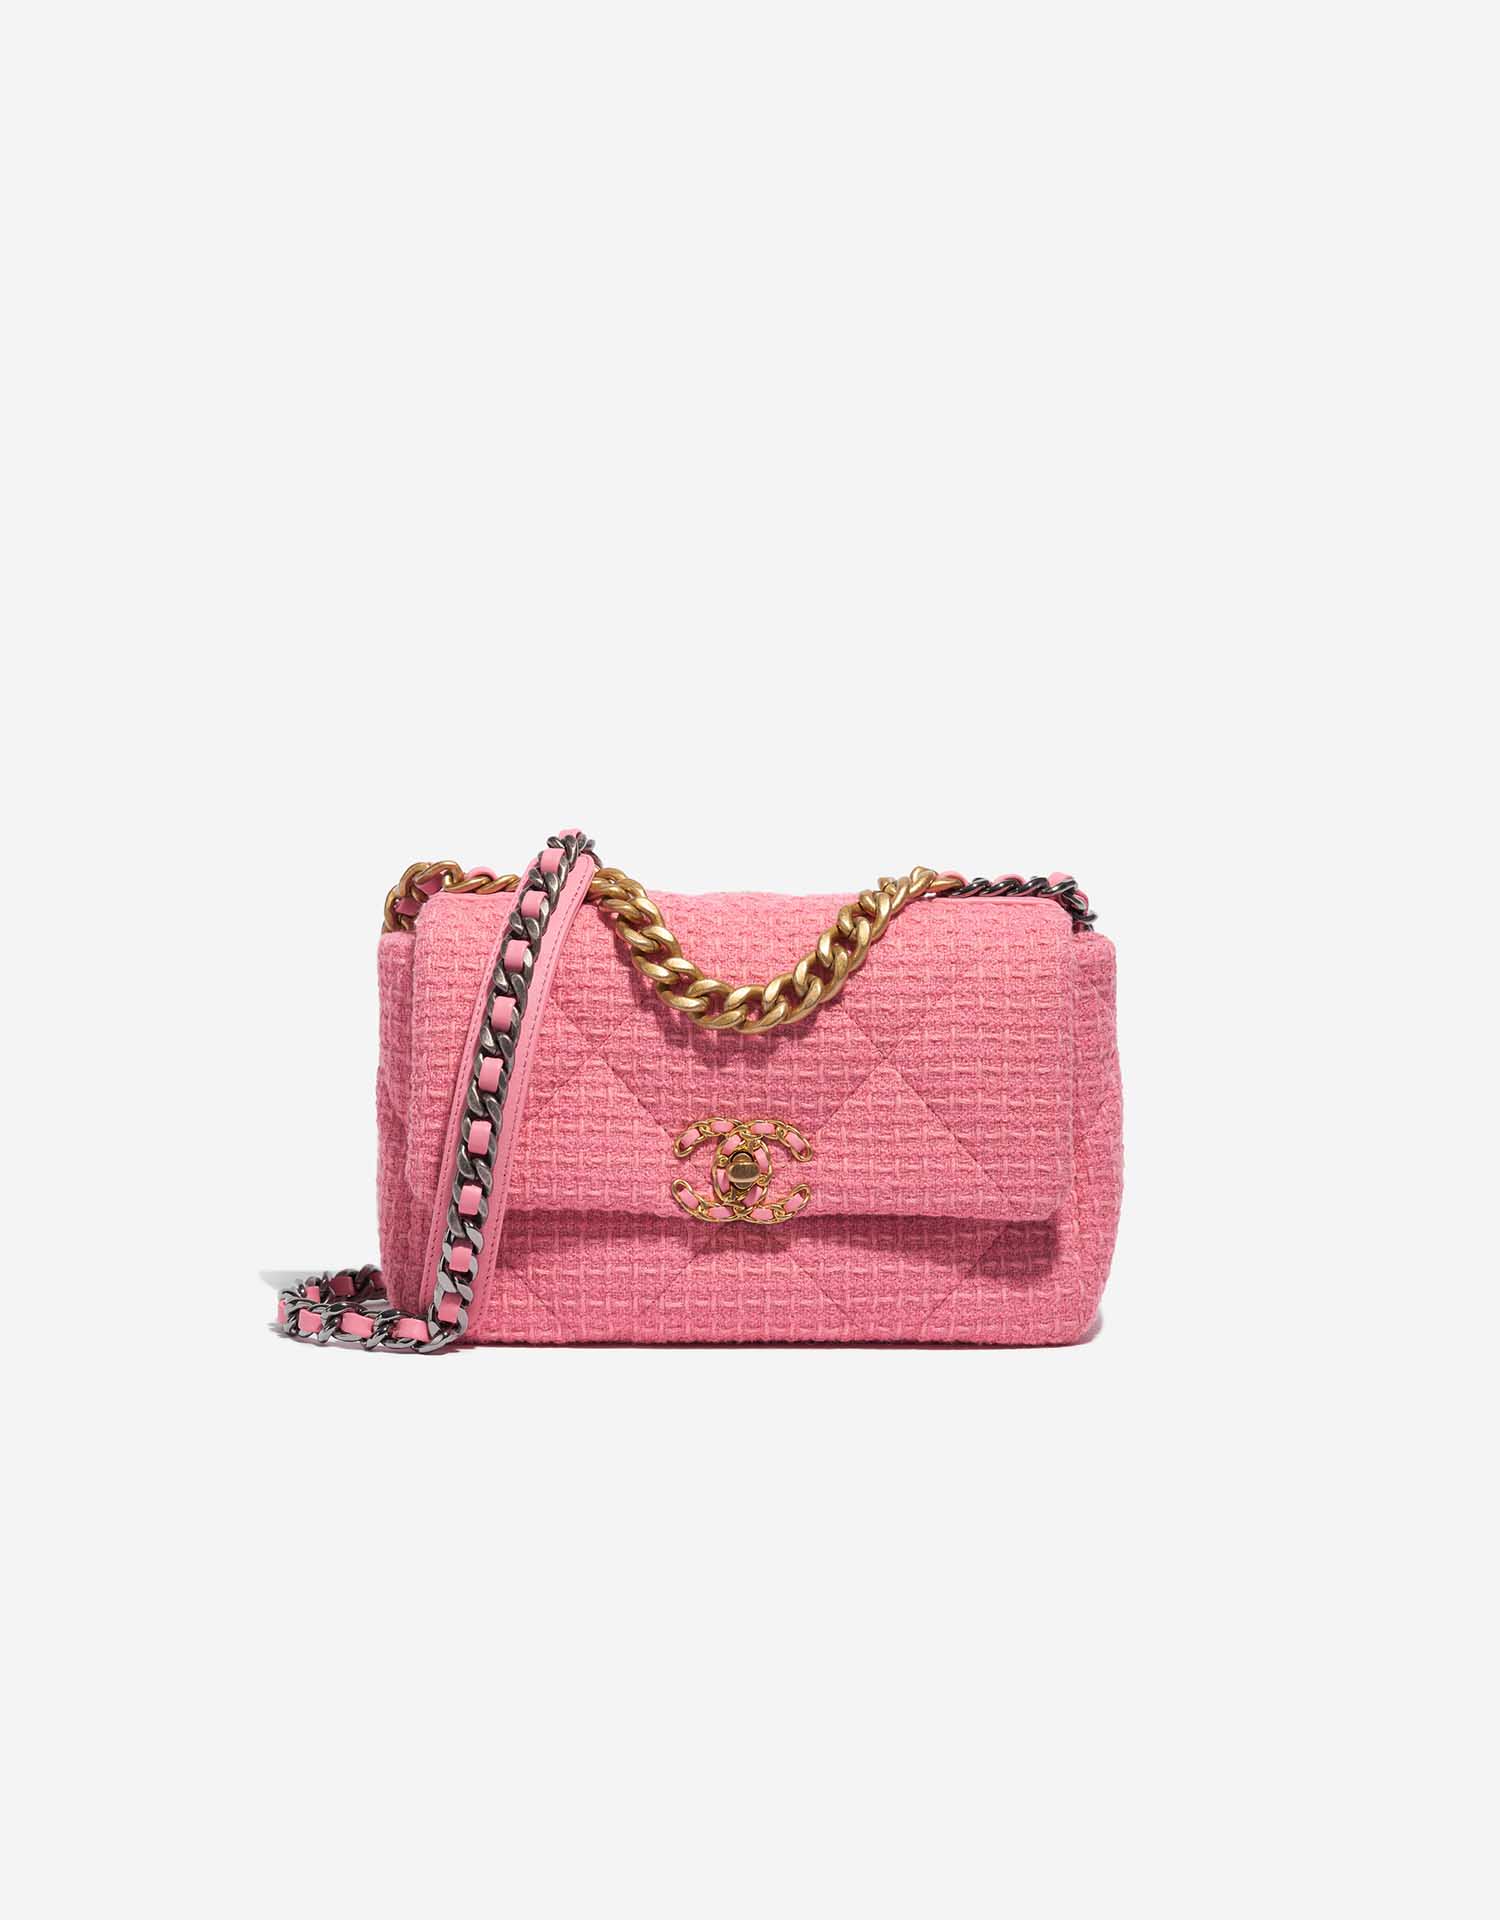 Chanel 19 Flap Bag Tweed Light Rosé | SACLÀB